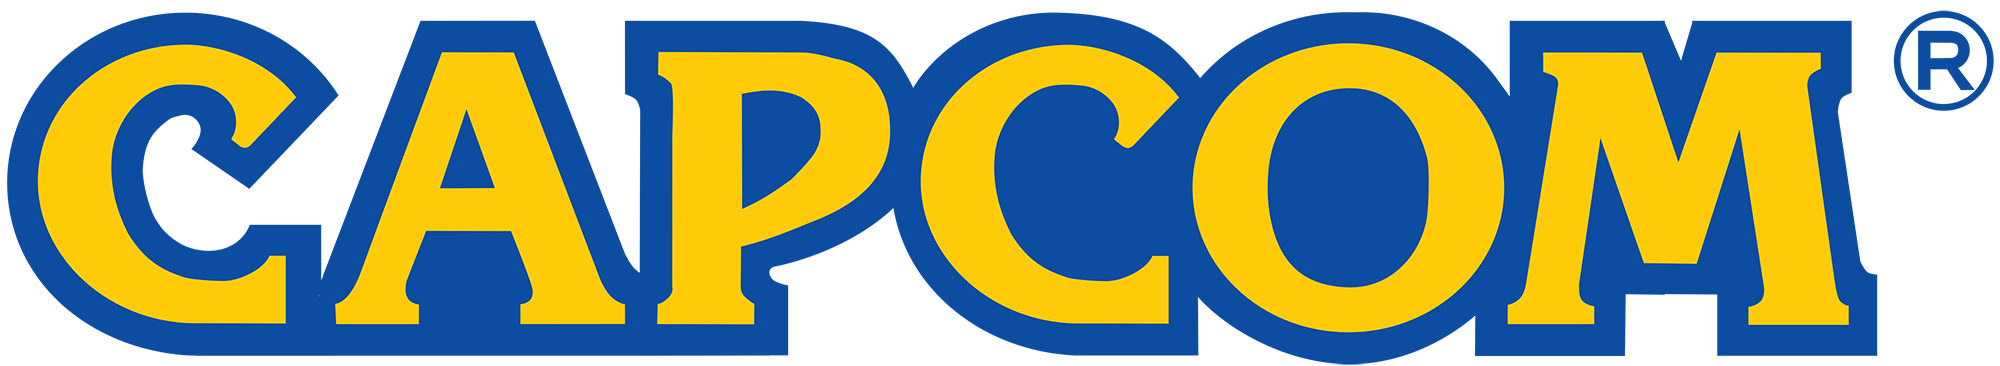 CAPCOM Logo